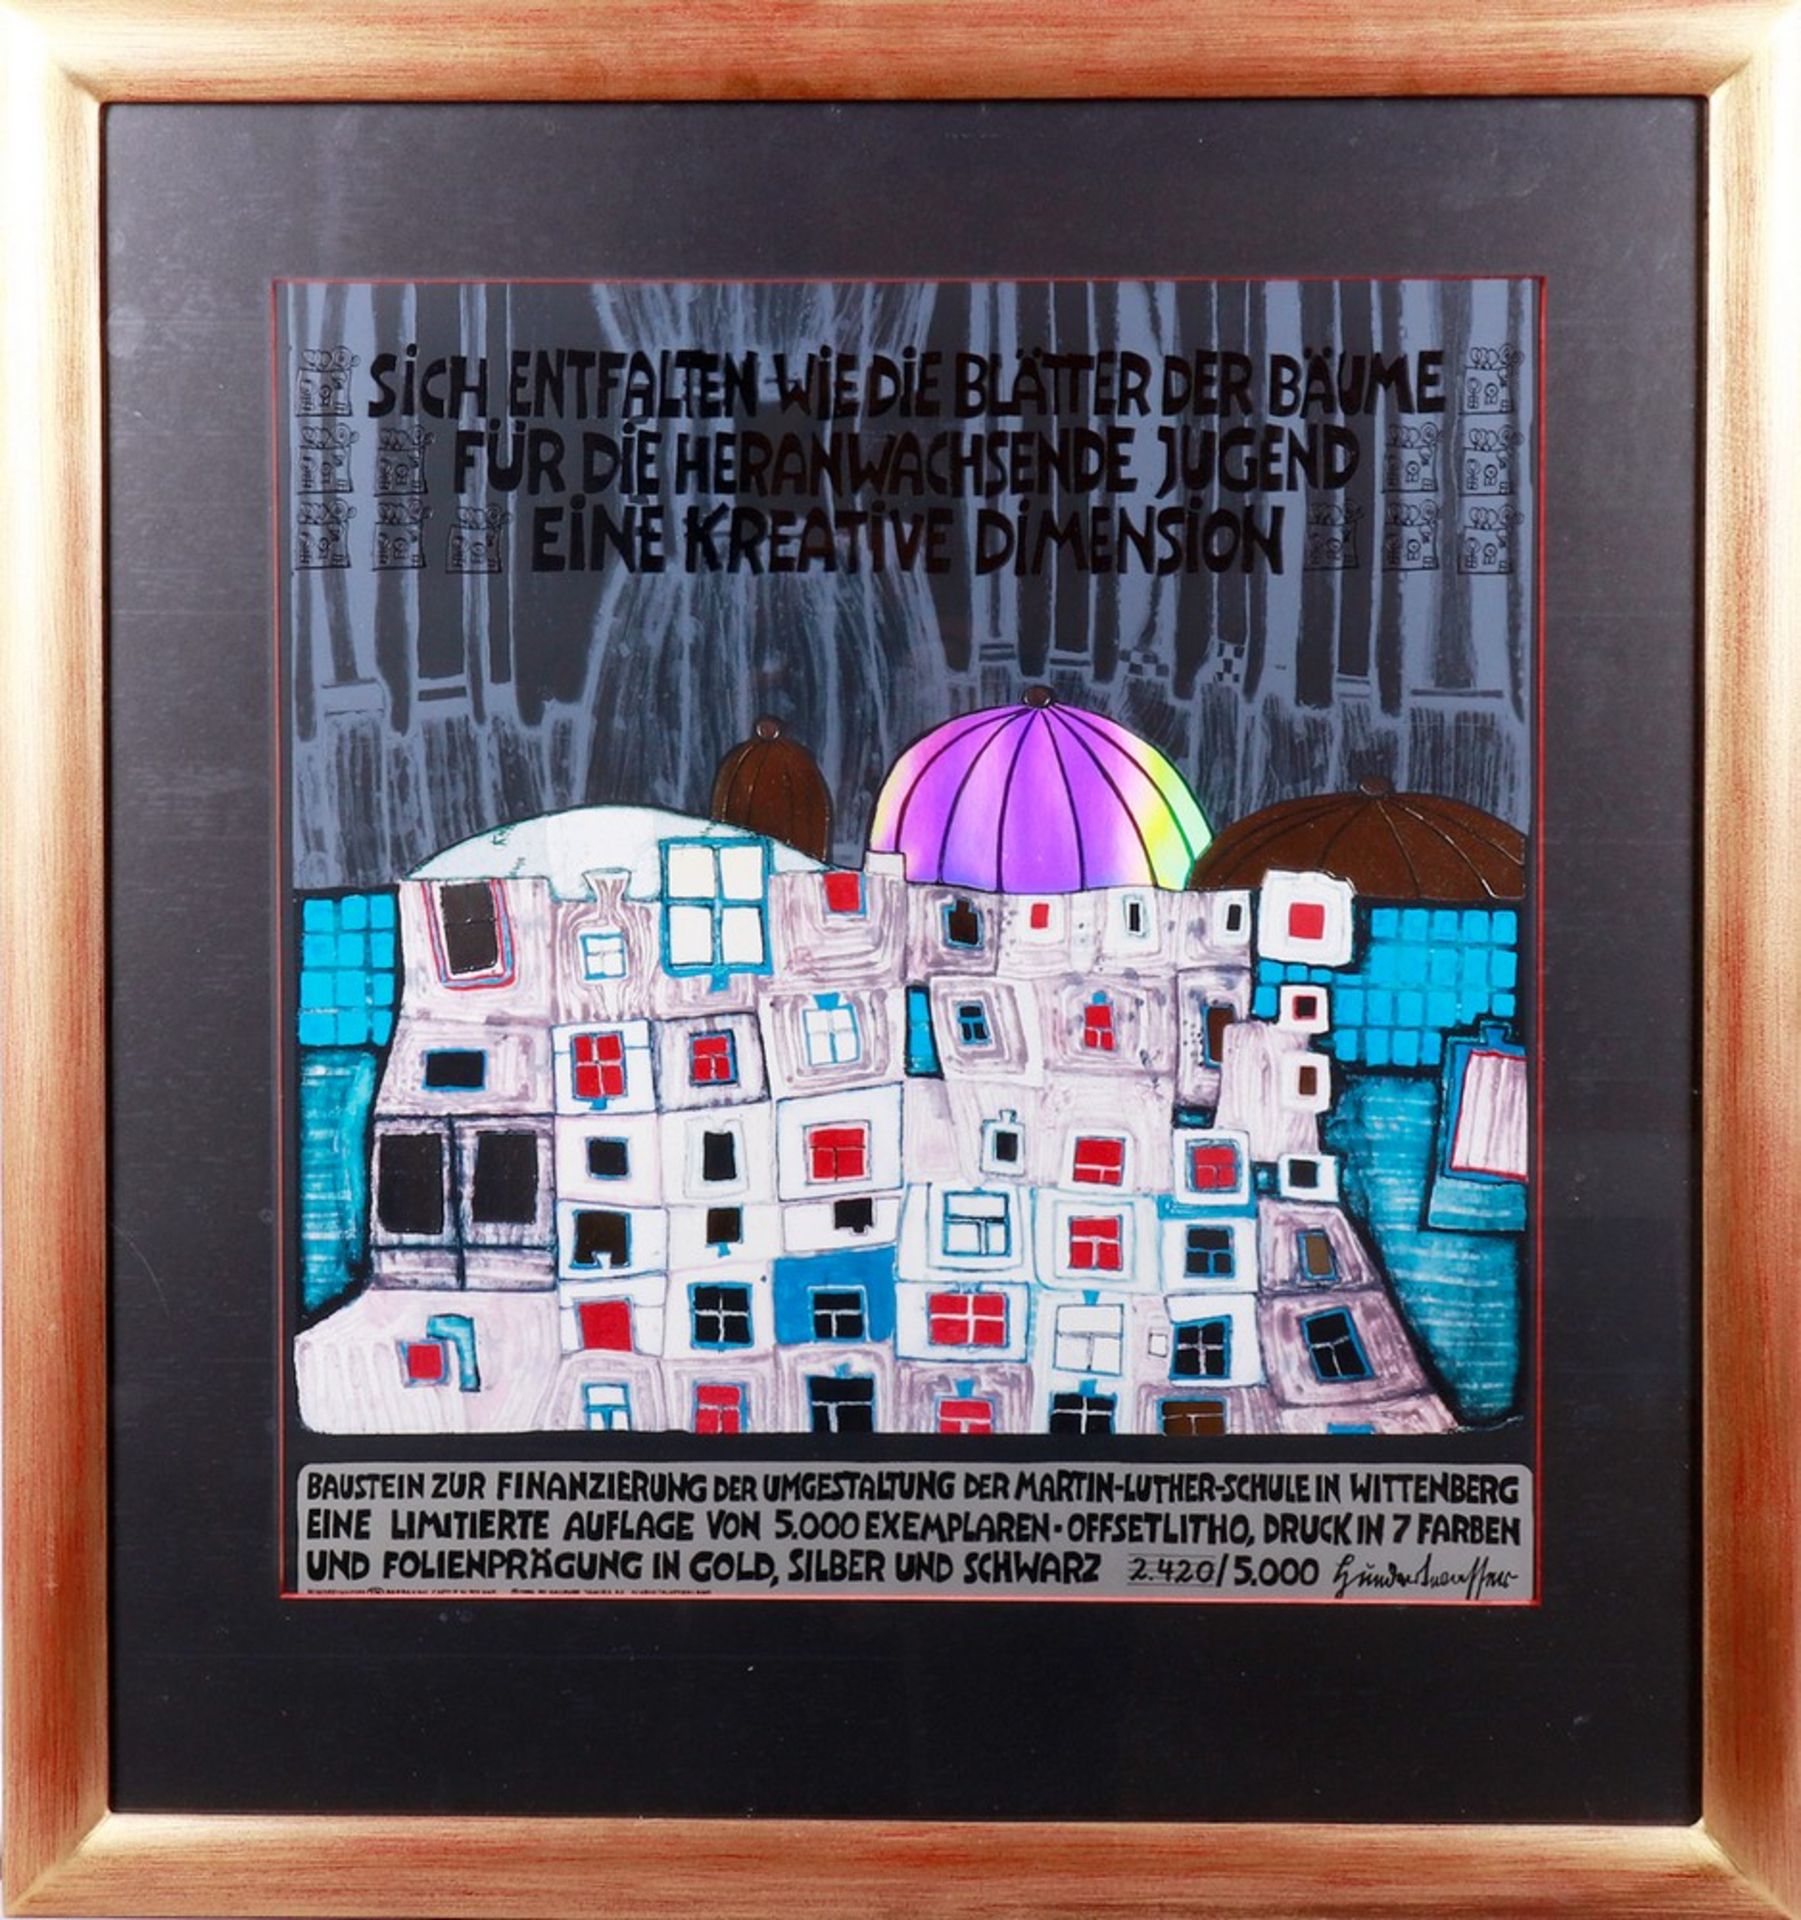 Friedensreich Hundertwasser (1928, Vienna - Brisbane, 2000)